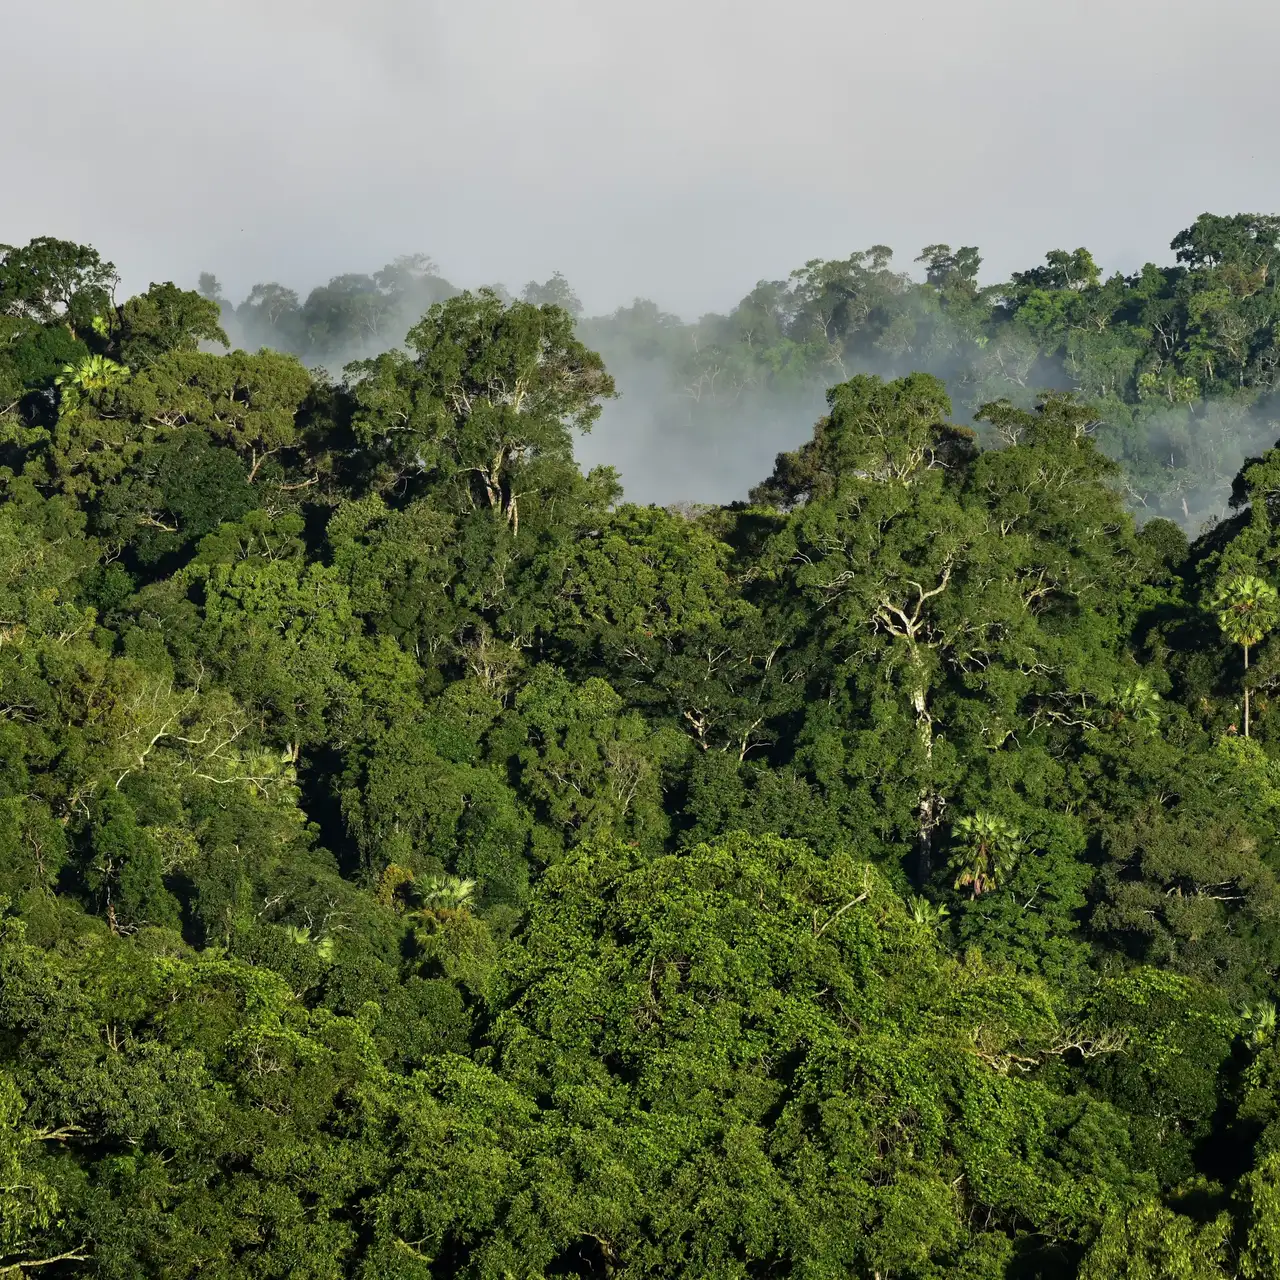 Weitläufige Aussicht auf ein dichtes, grünes Regenwald-Dach mit Sonnenlicht und Nebel.